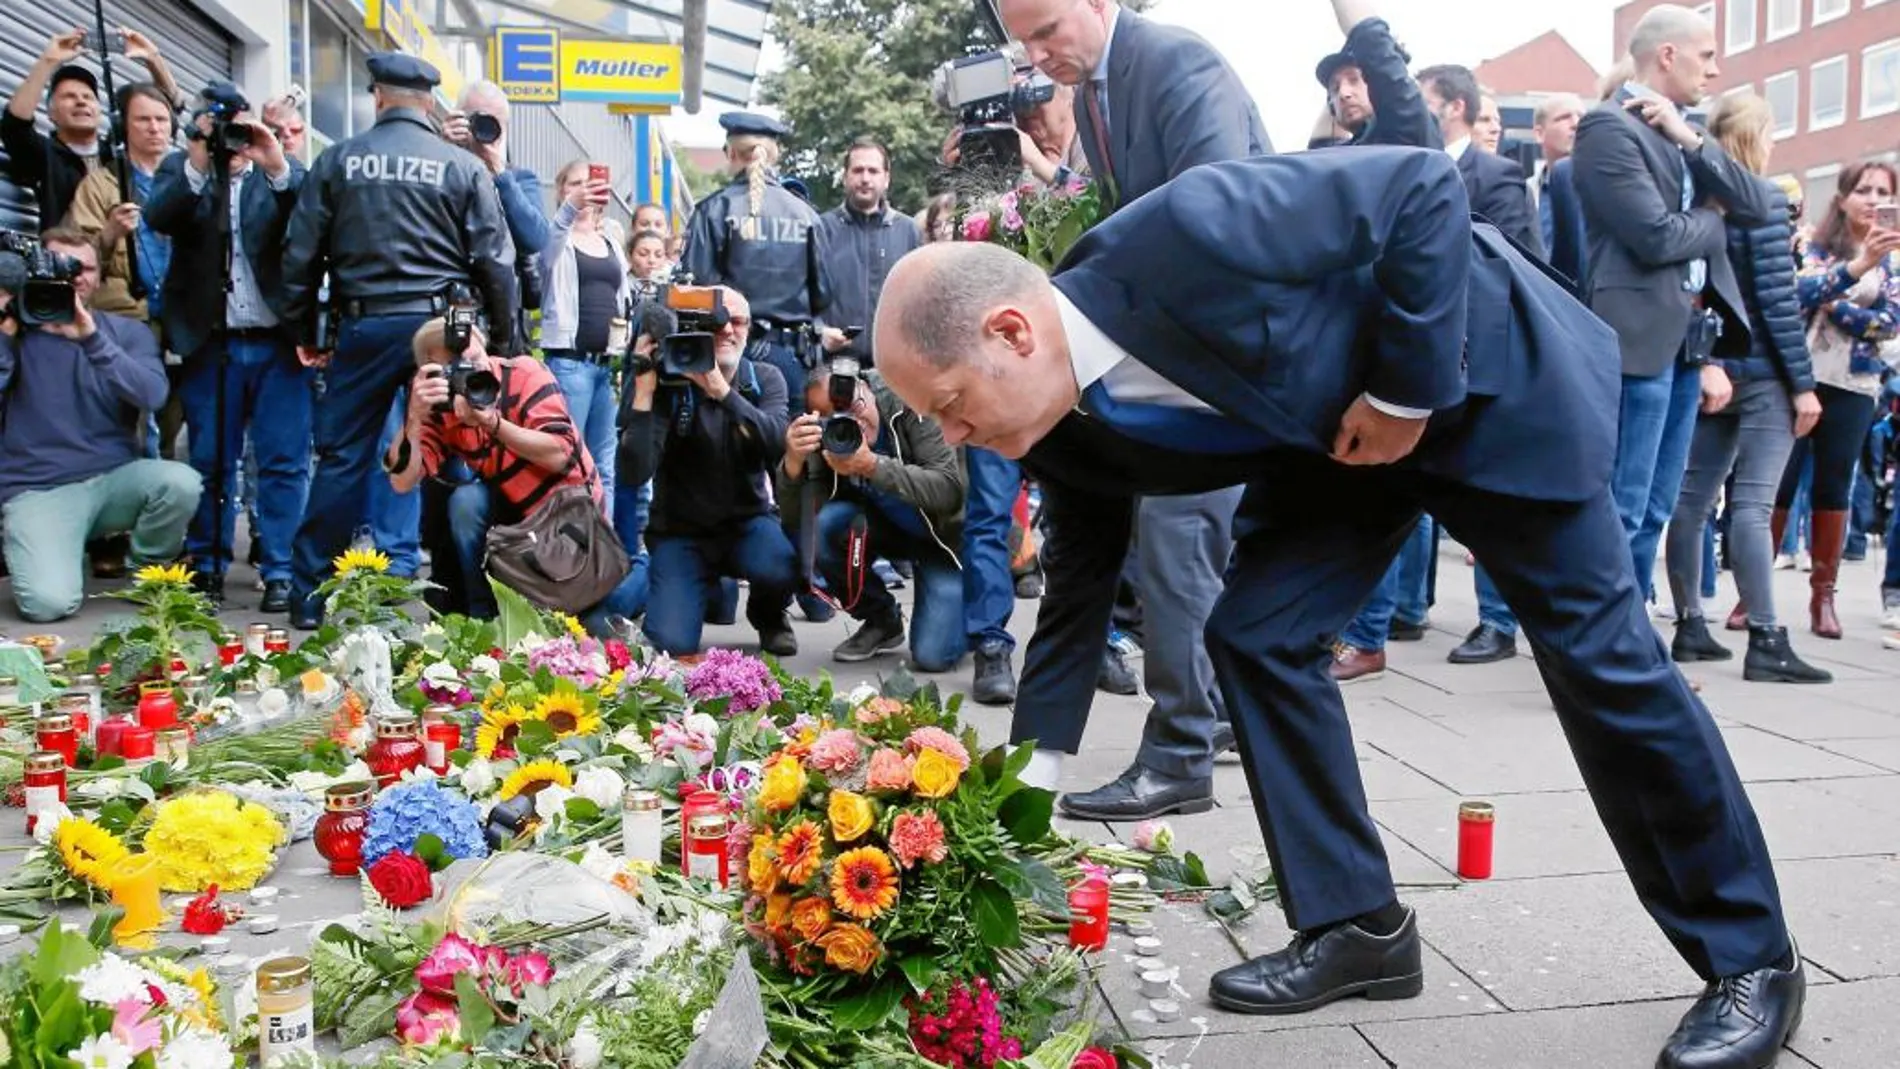 El alcalde de Hamburgo Olaf Scholz deposita flores frente al supermercado donde se produjo el ataque